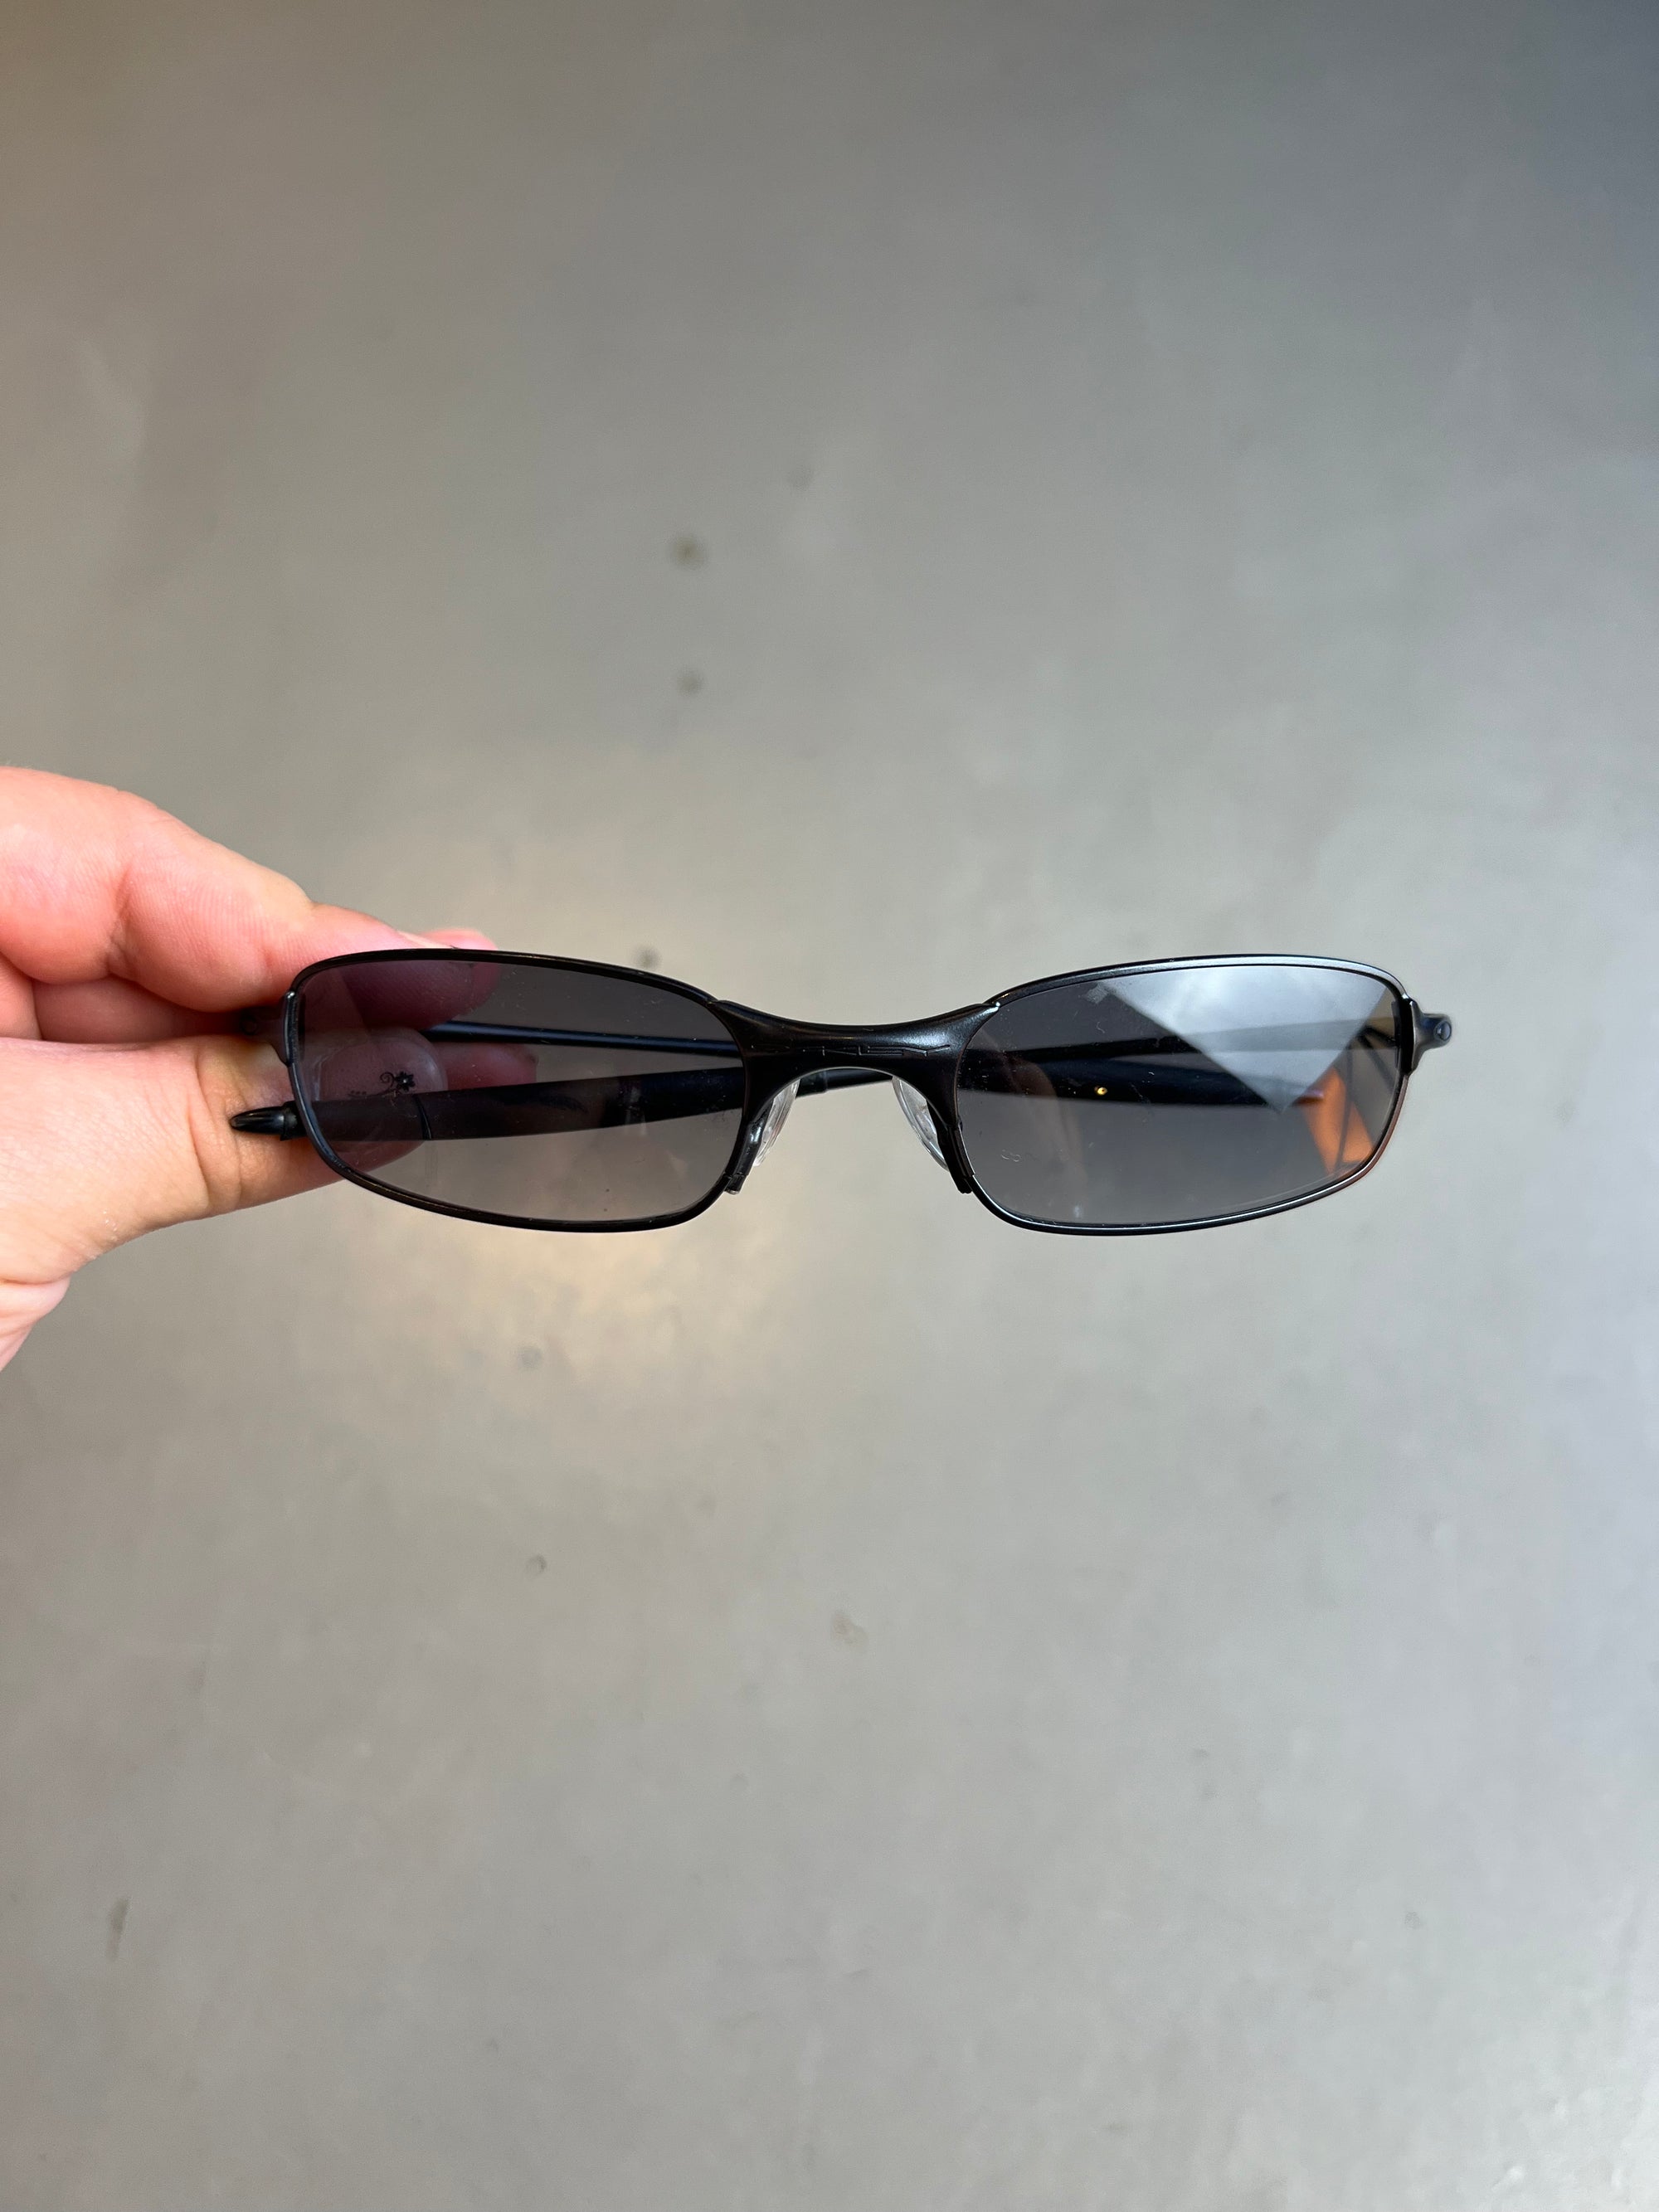 Auf dem Bild ist ein Produktbild der Oakley Raver Sunglasses in Schwarz von vorne vor einem grauem Hintergrund zu sehen.